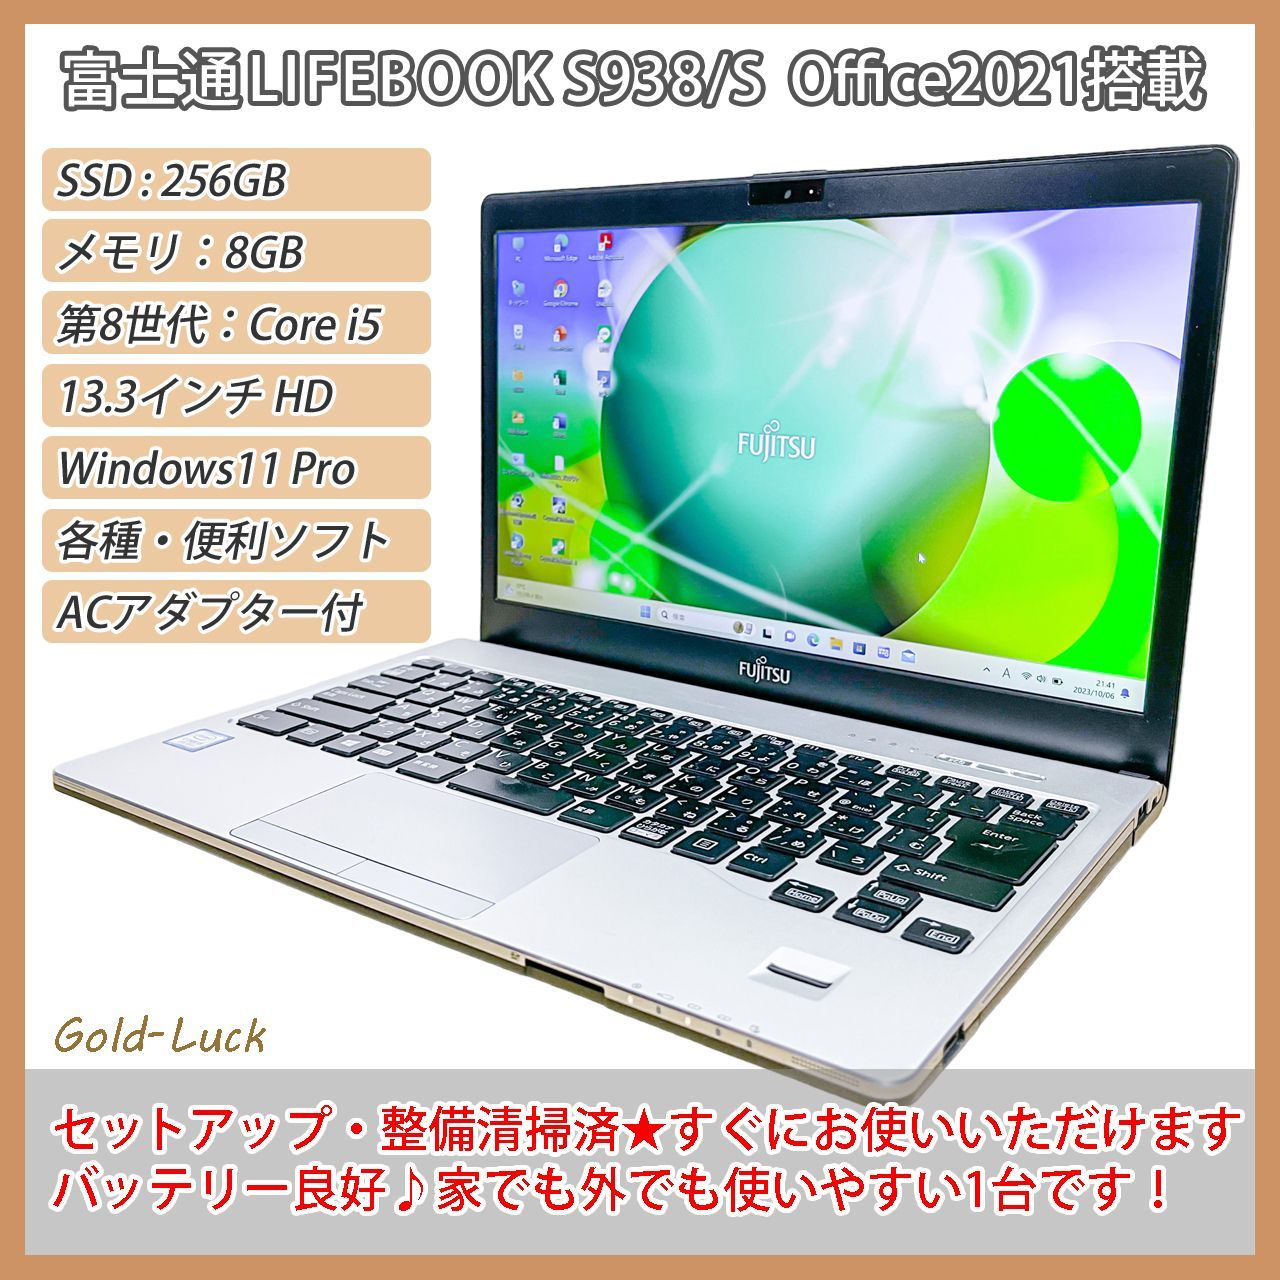 おまけ付】富士通 Fujitsu LIFEBOOK S938/S Core i5-8350U メモリ:8GB